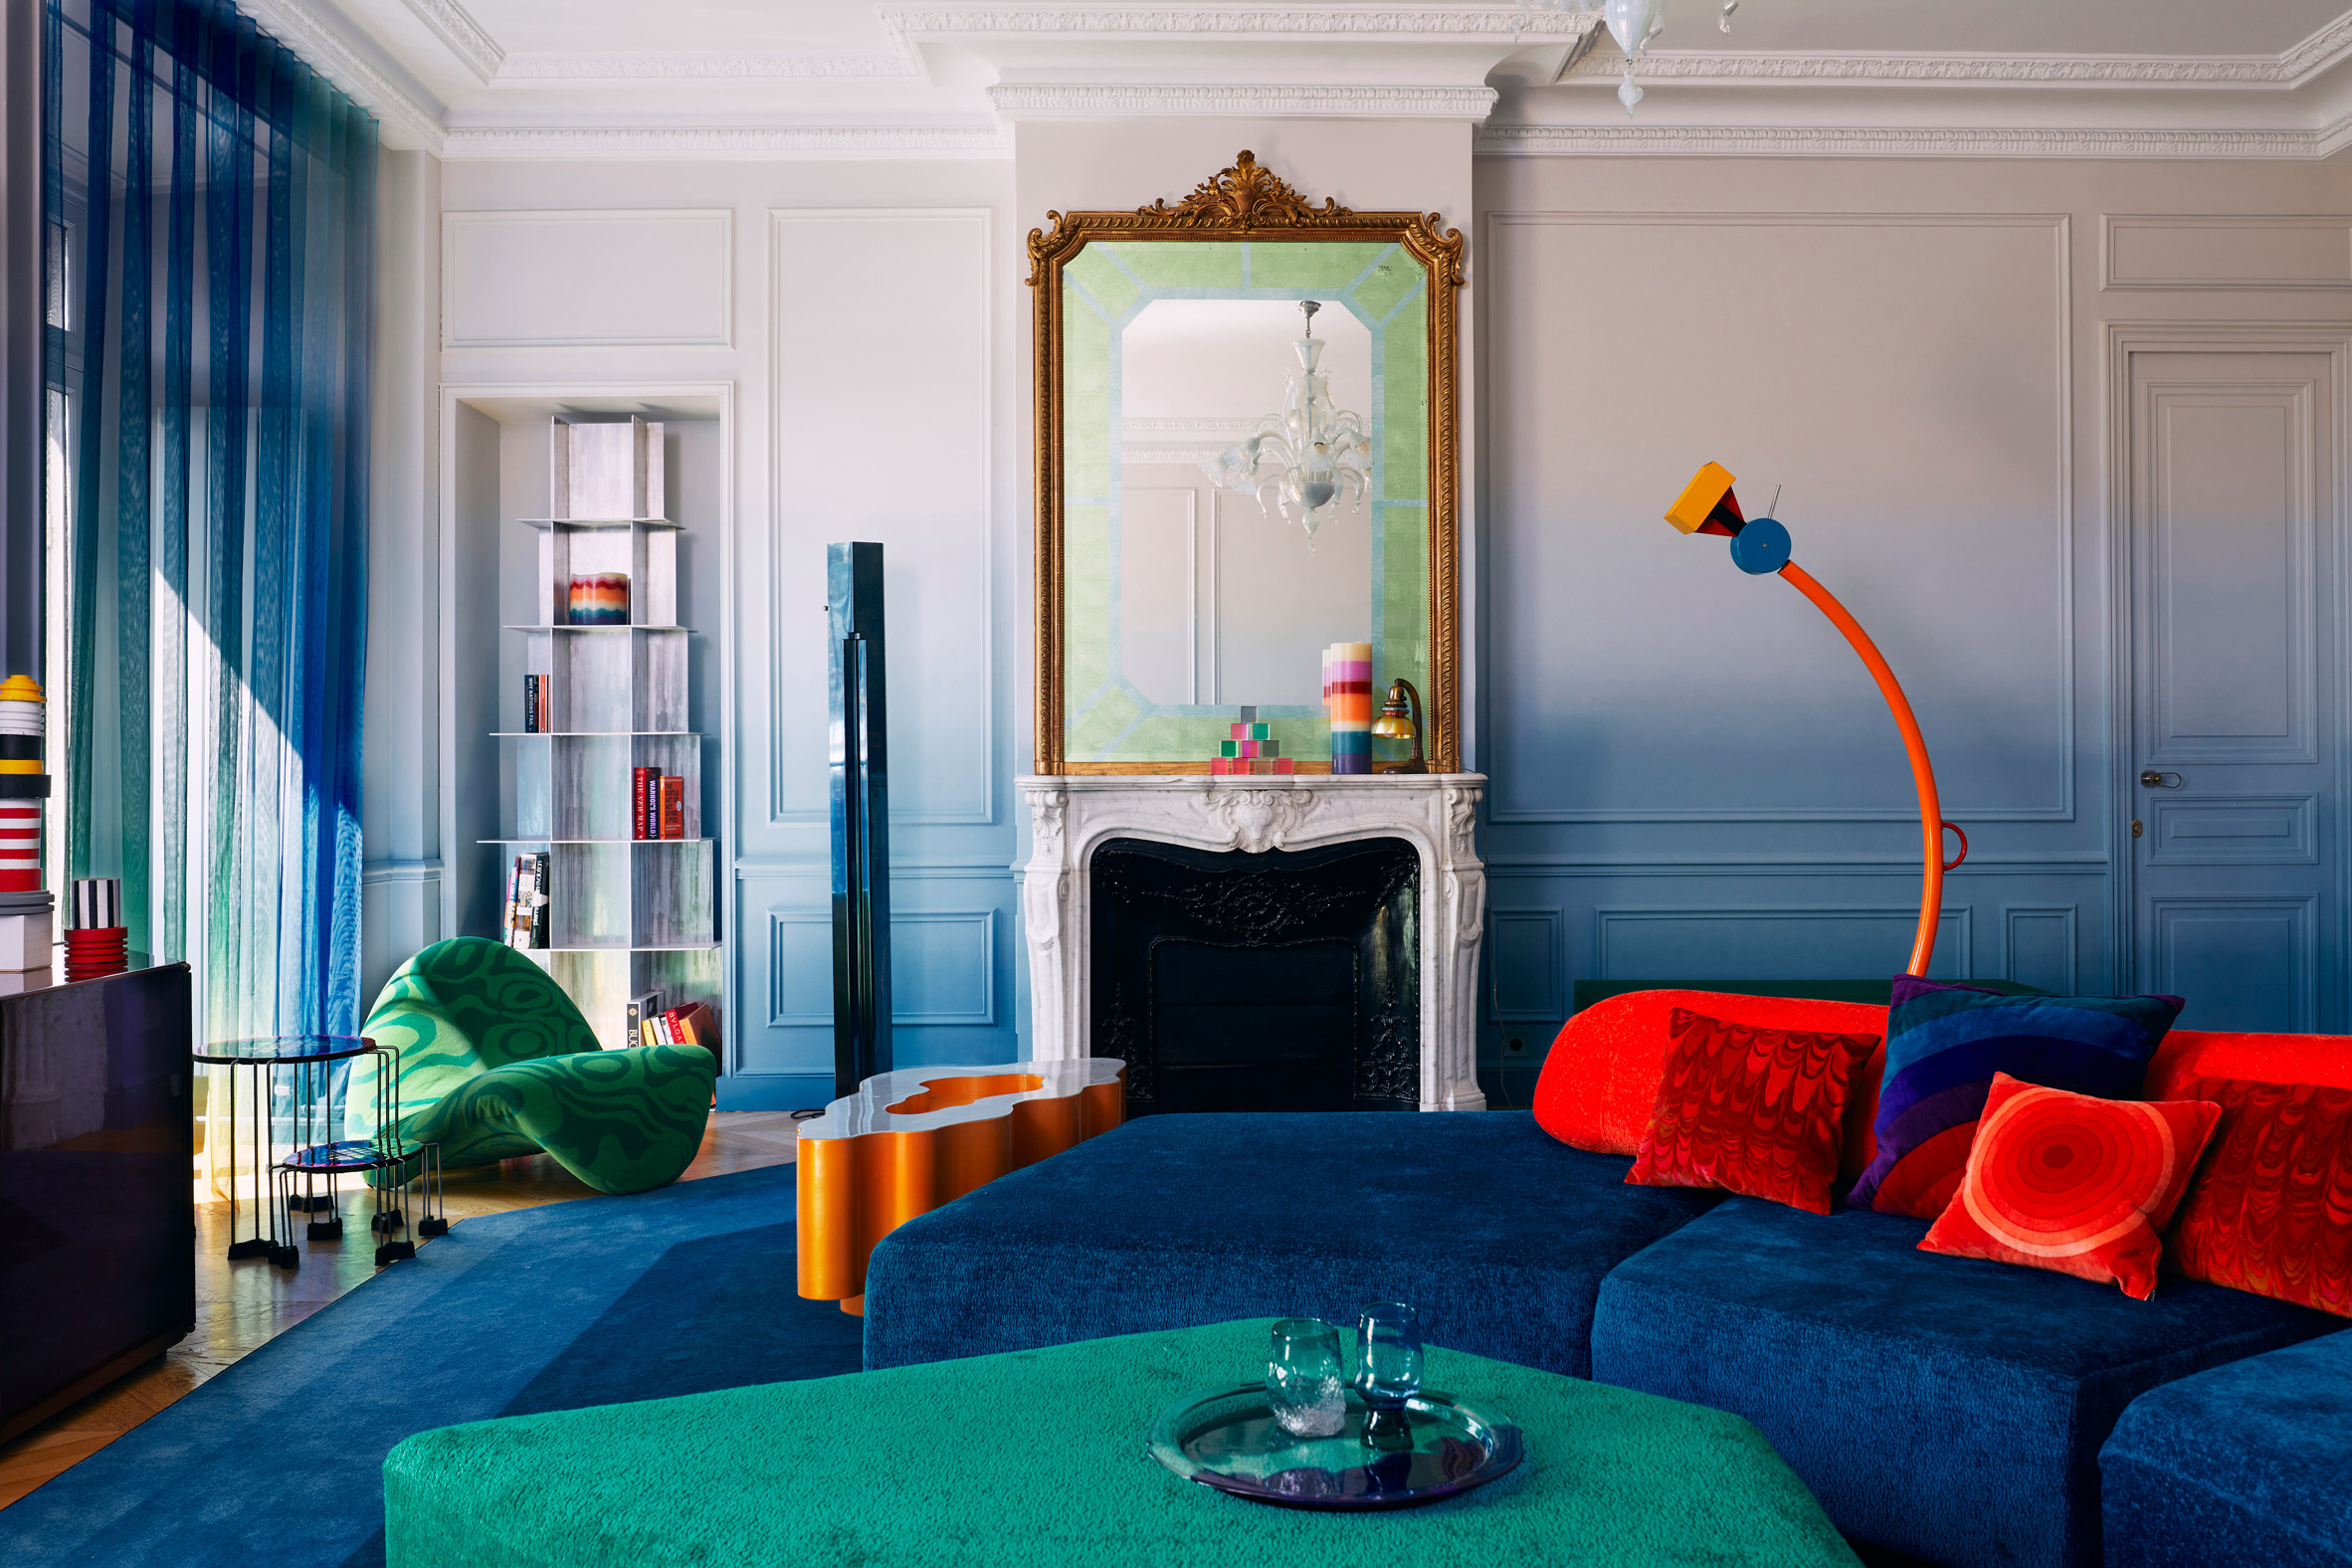 Uchronia将奥斯曼时代的巴黎公寓想象成“彩色珠宝盒”|ART-Arrakis | 建筑室内设计的创新与灵感